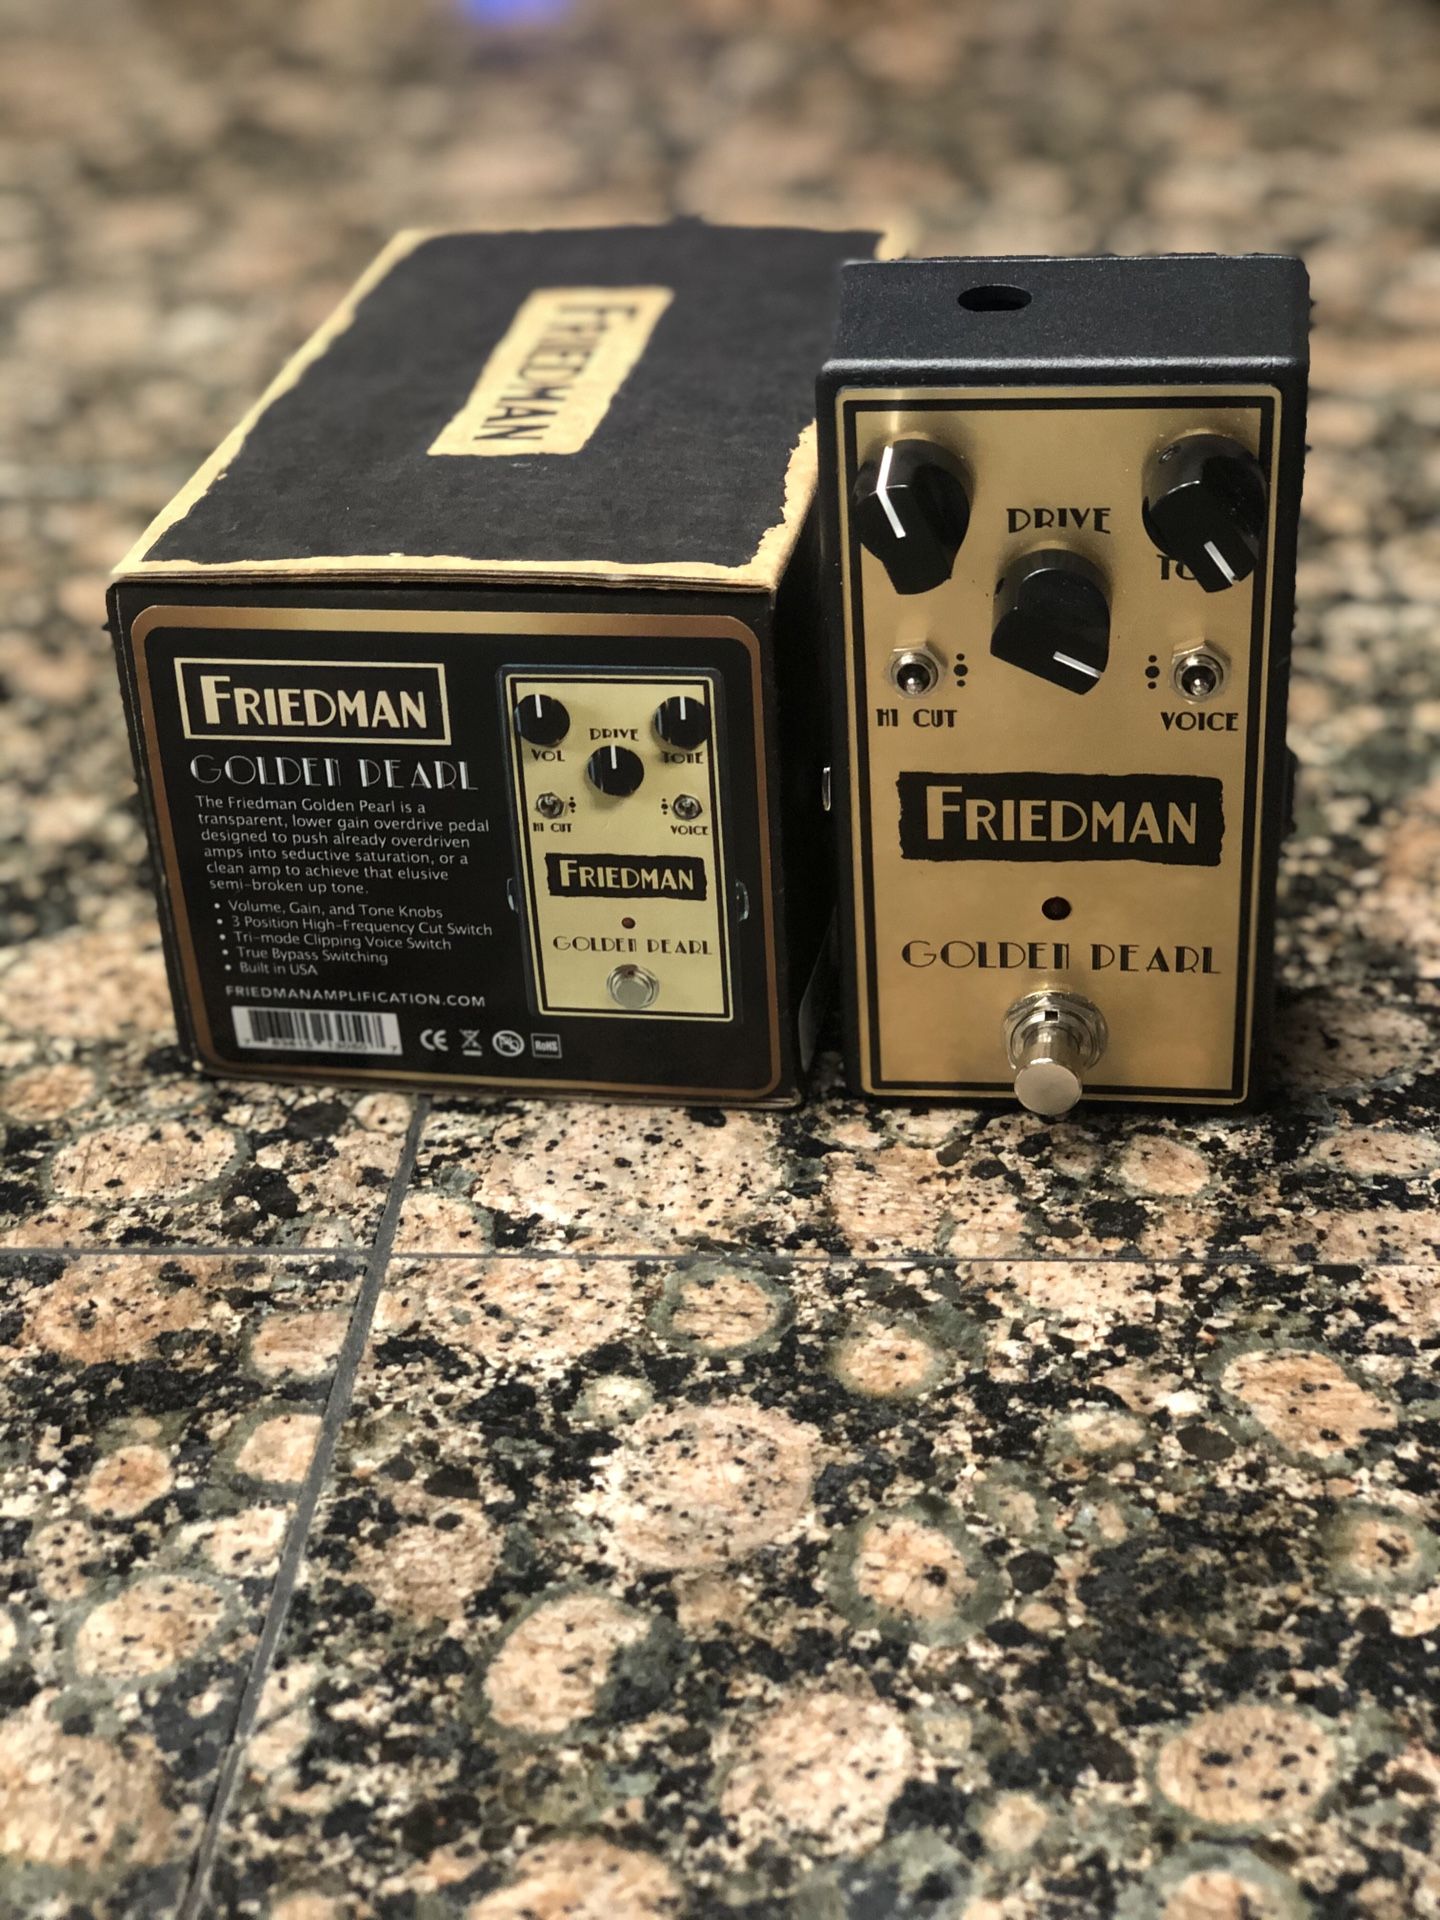 Friedman Golden Pearl guitar pedal